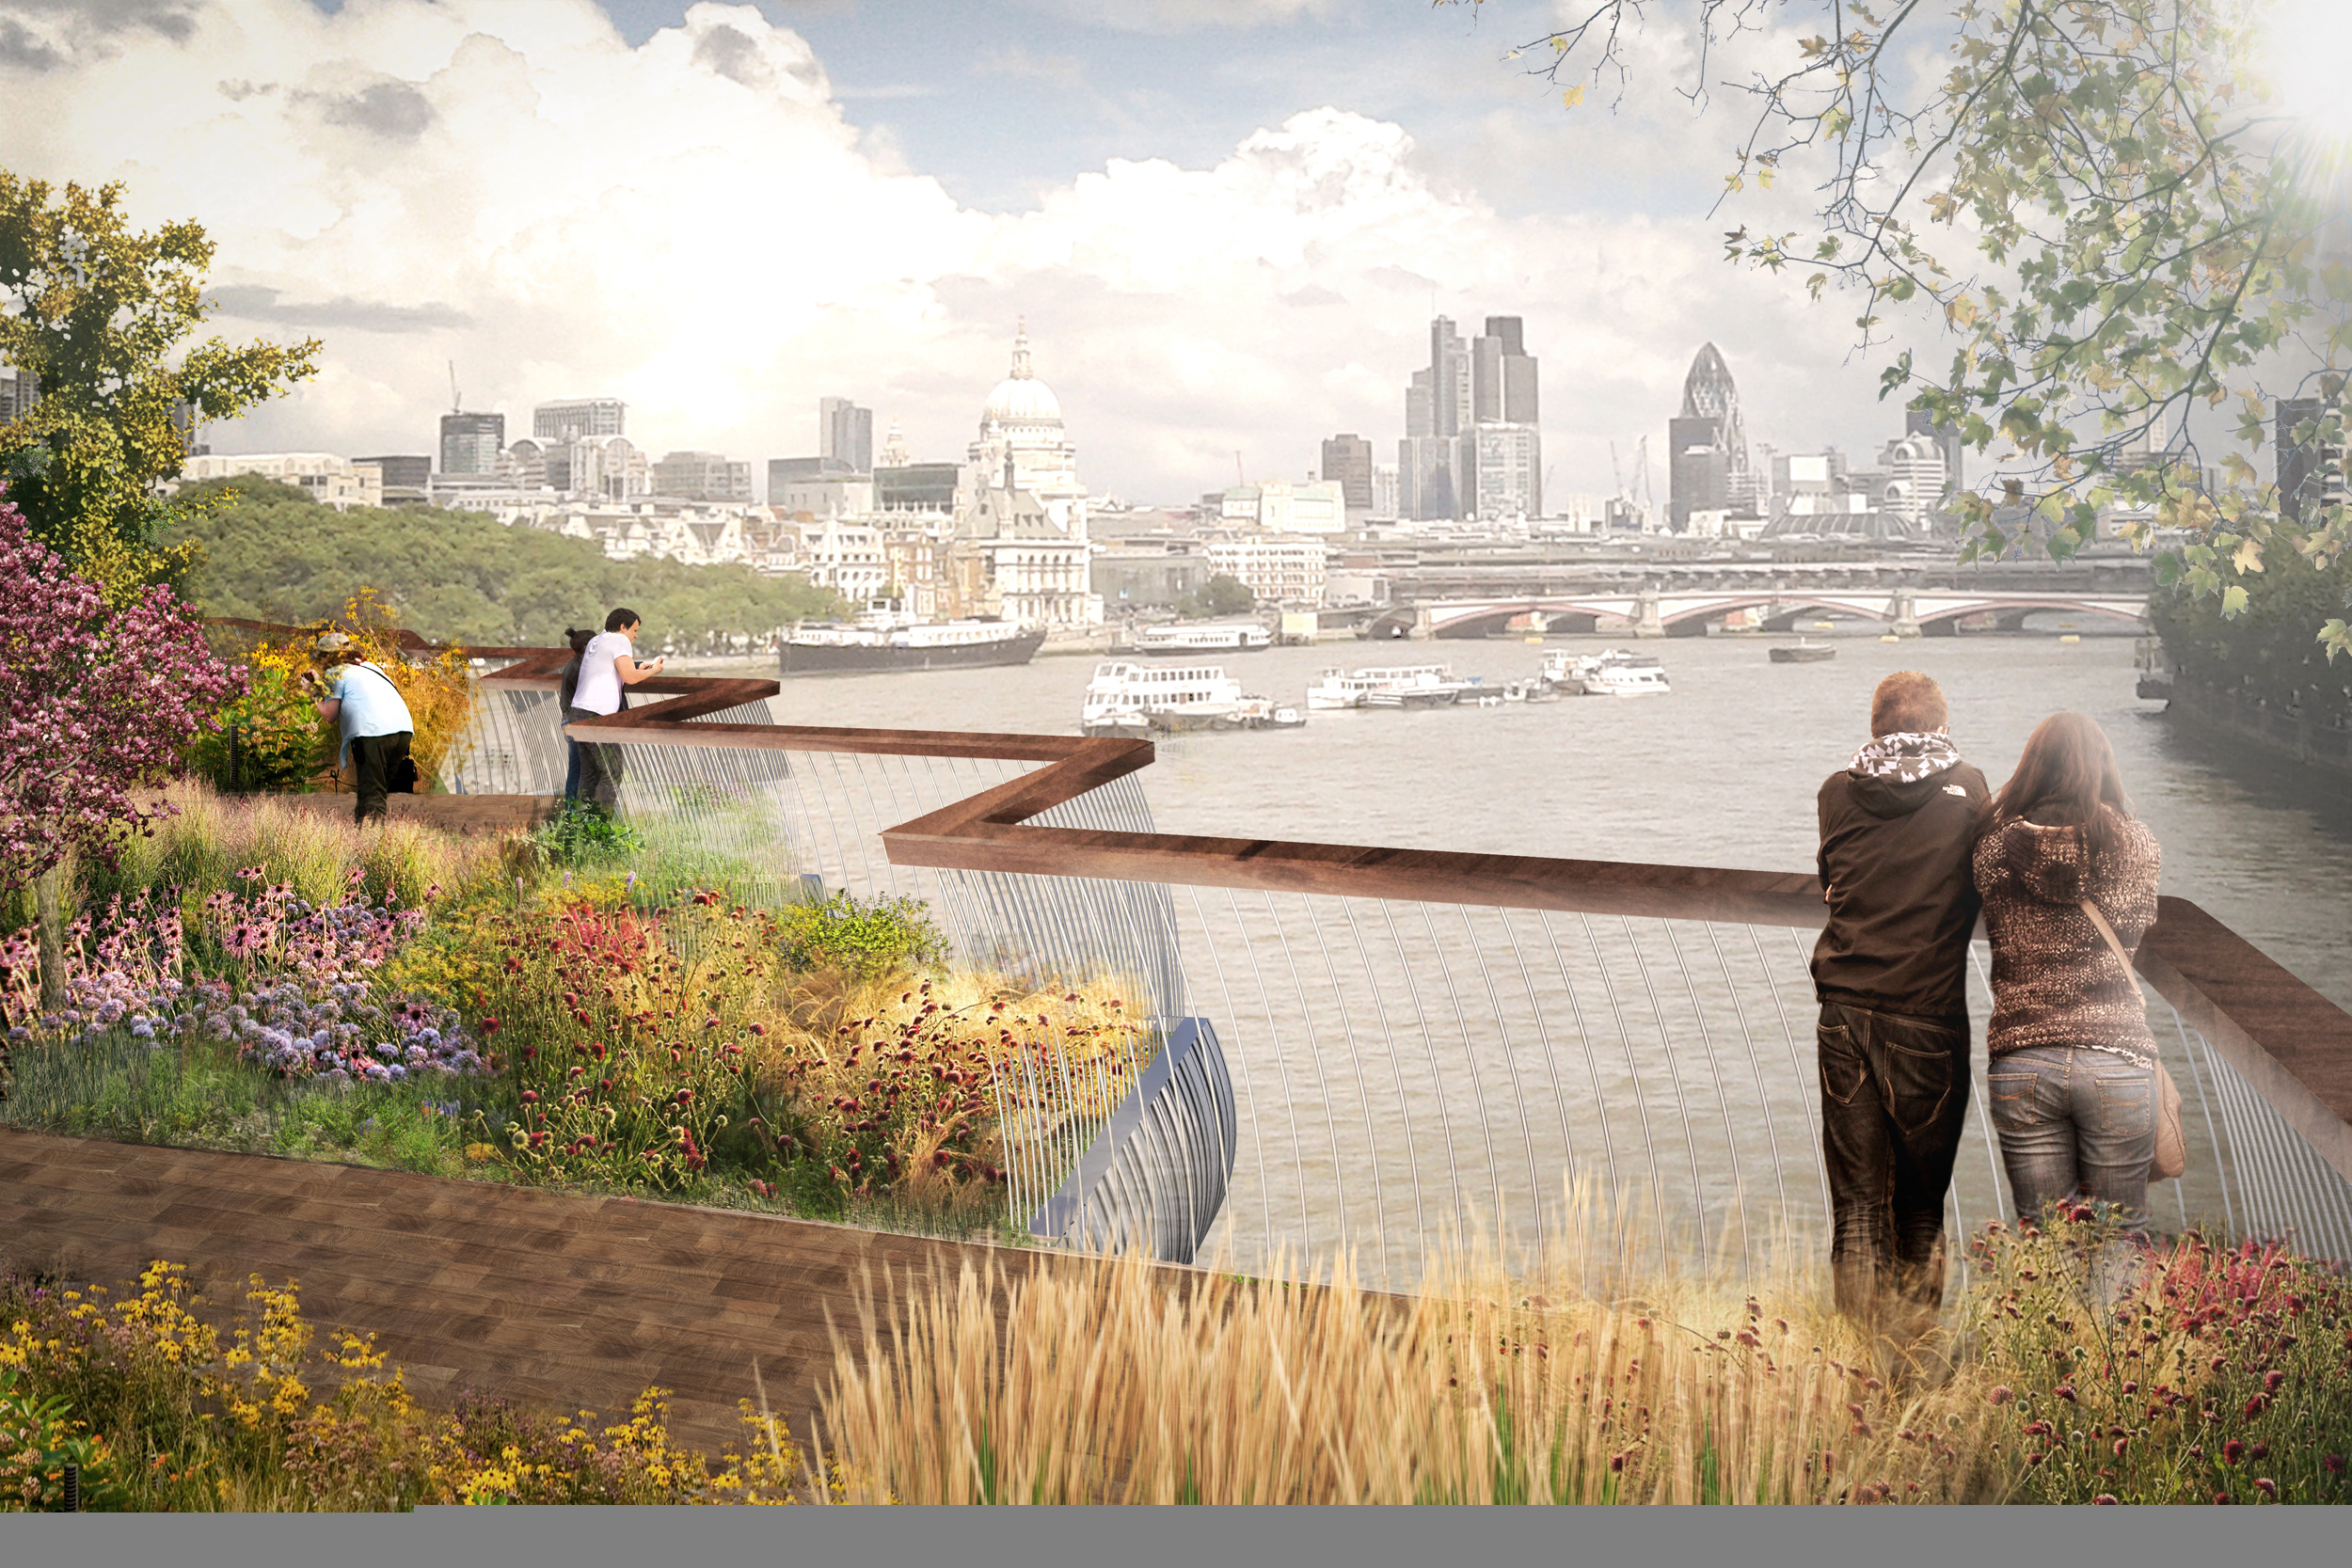 London’s Plan To Build A Garden Bridge Over The Thames